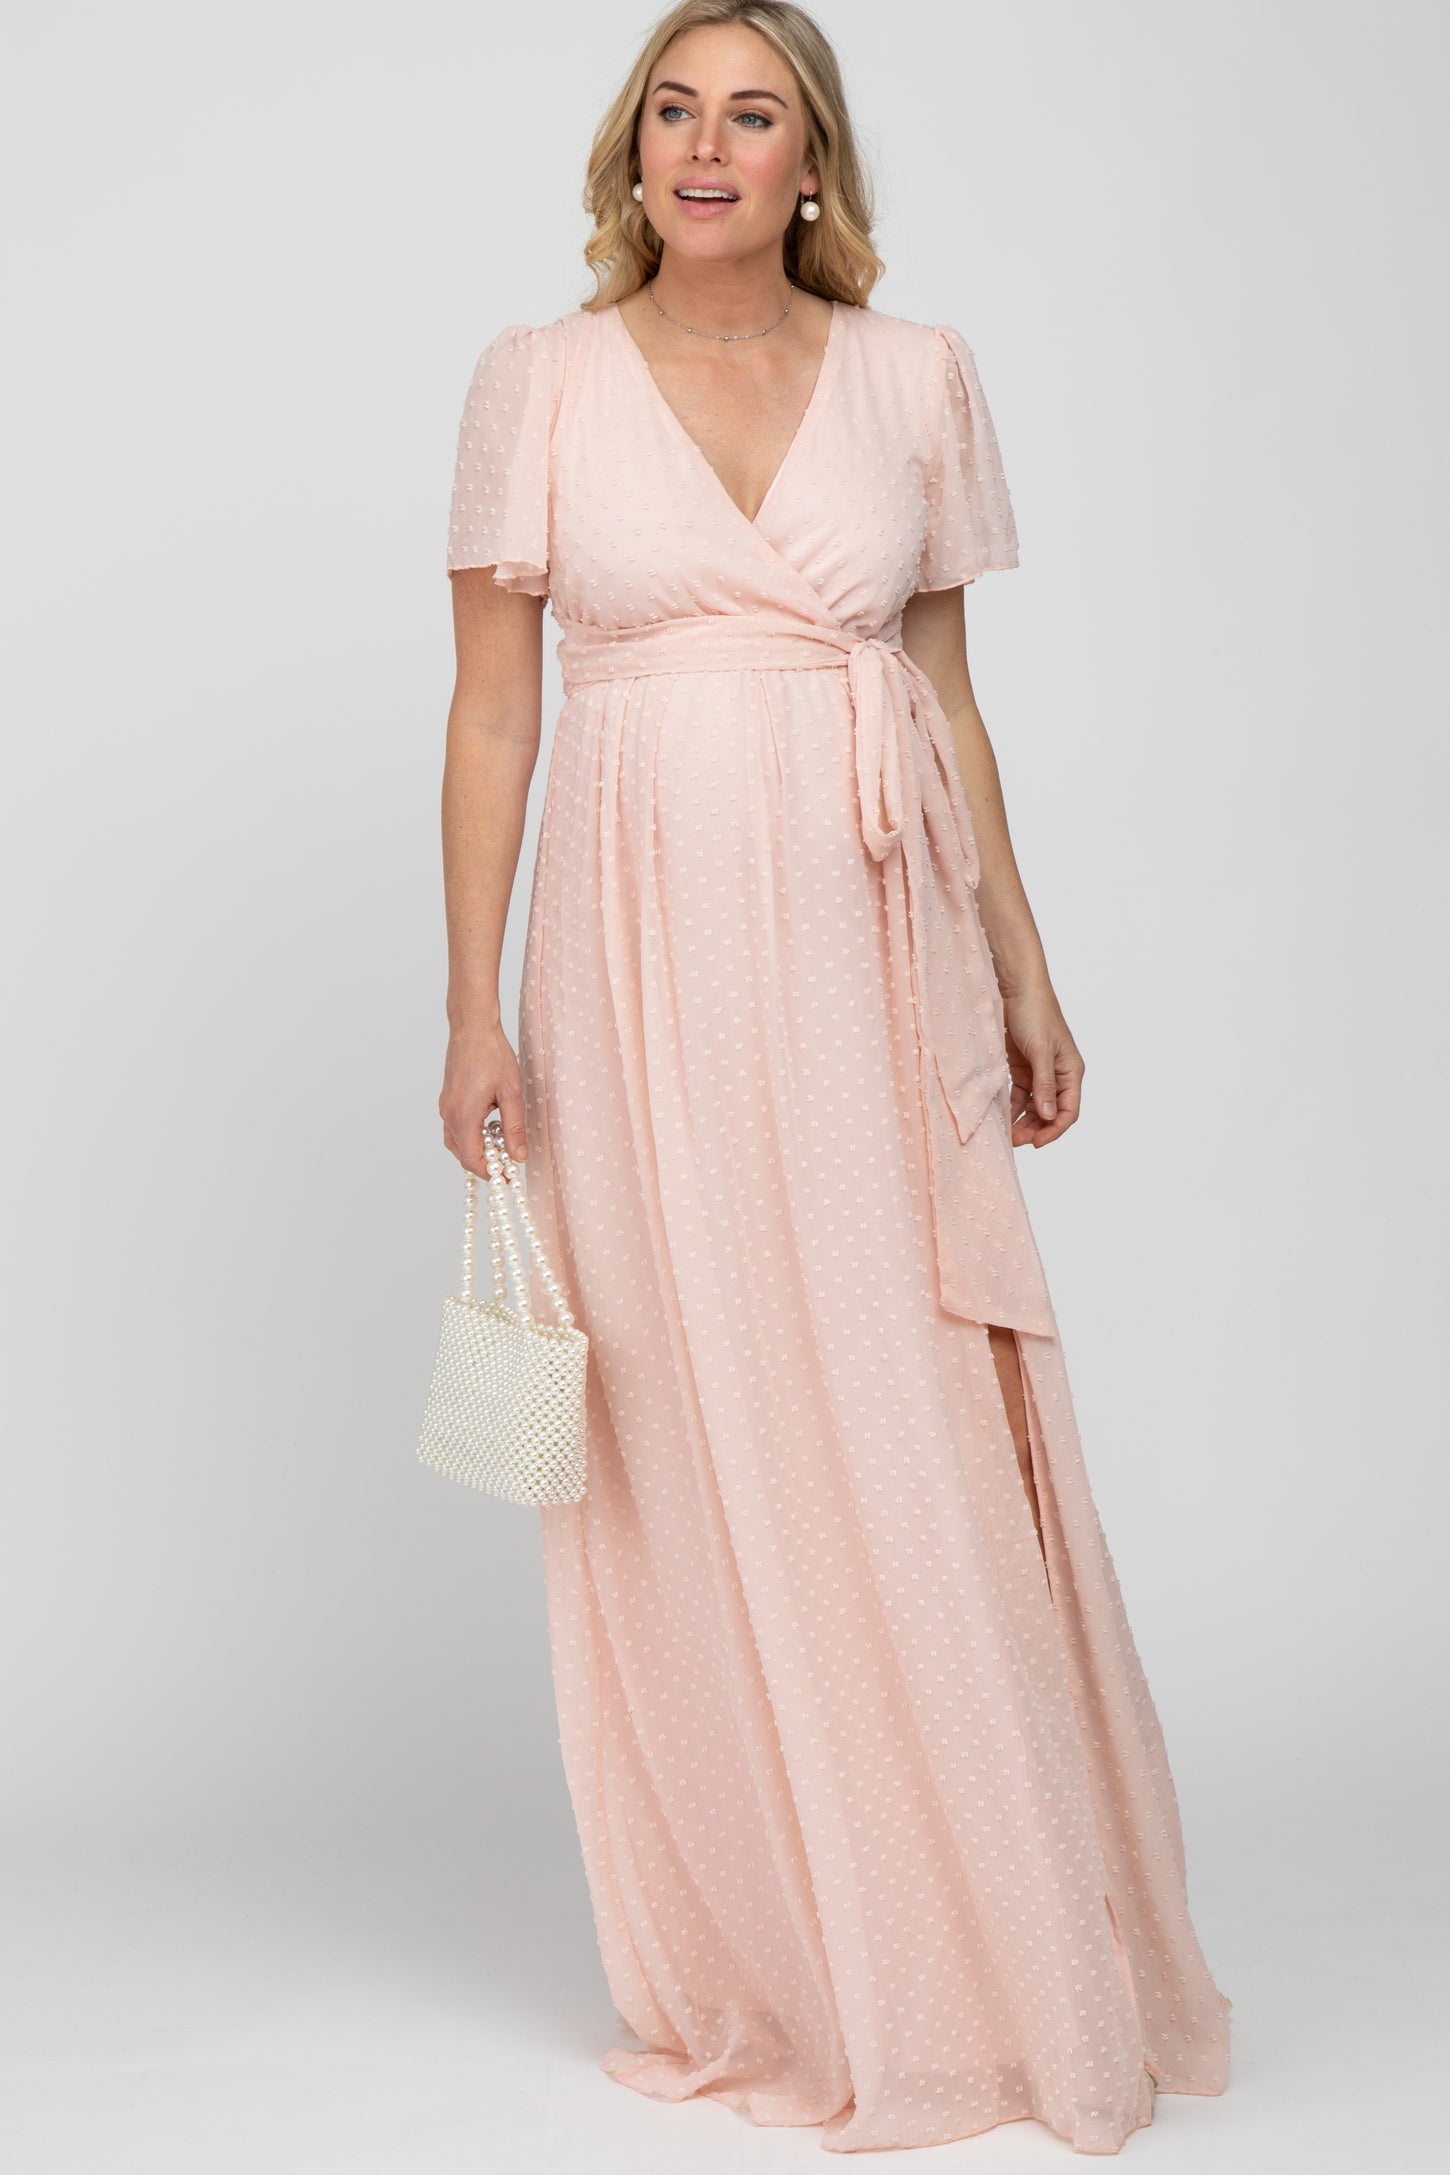 Light Pink Swiss Dot Chiffon Maternity Maxi Dress